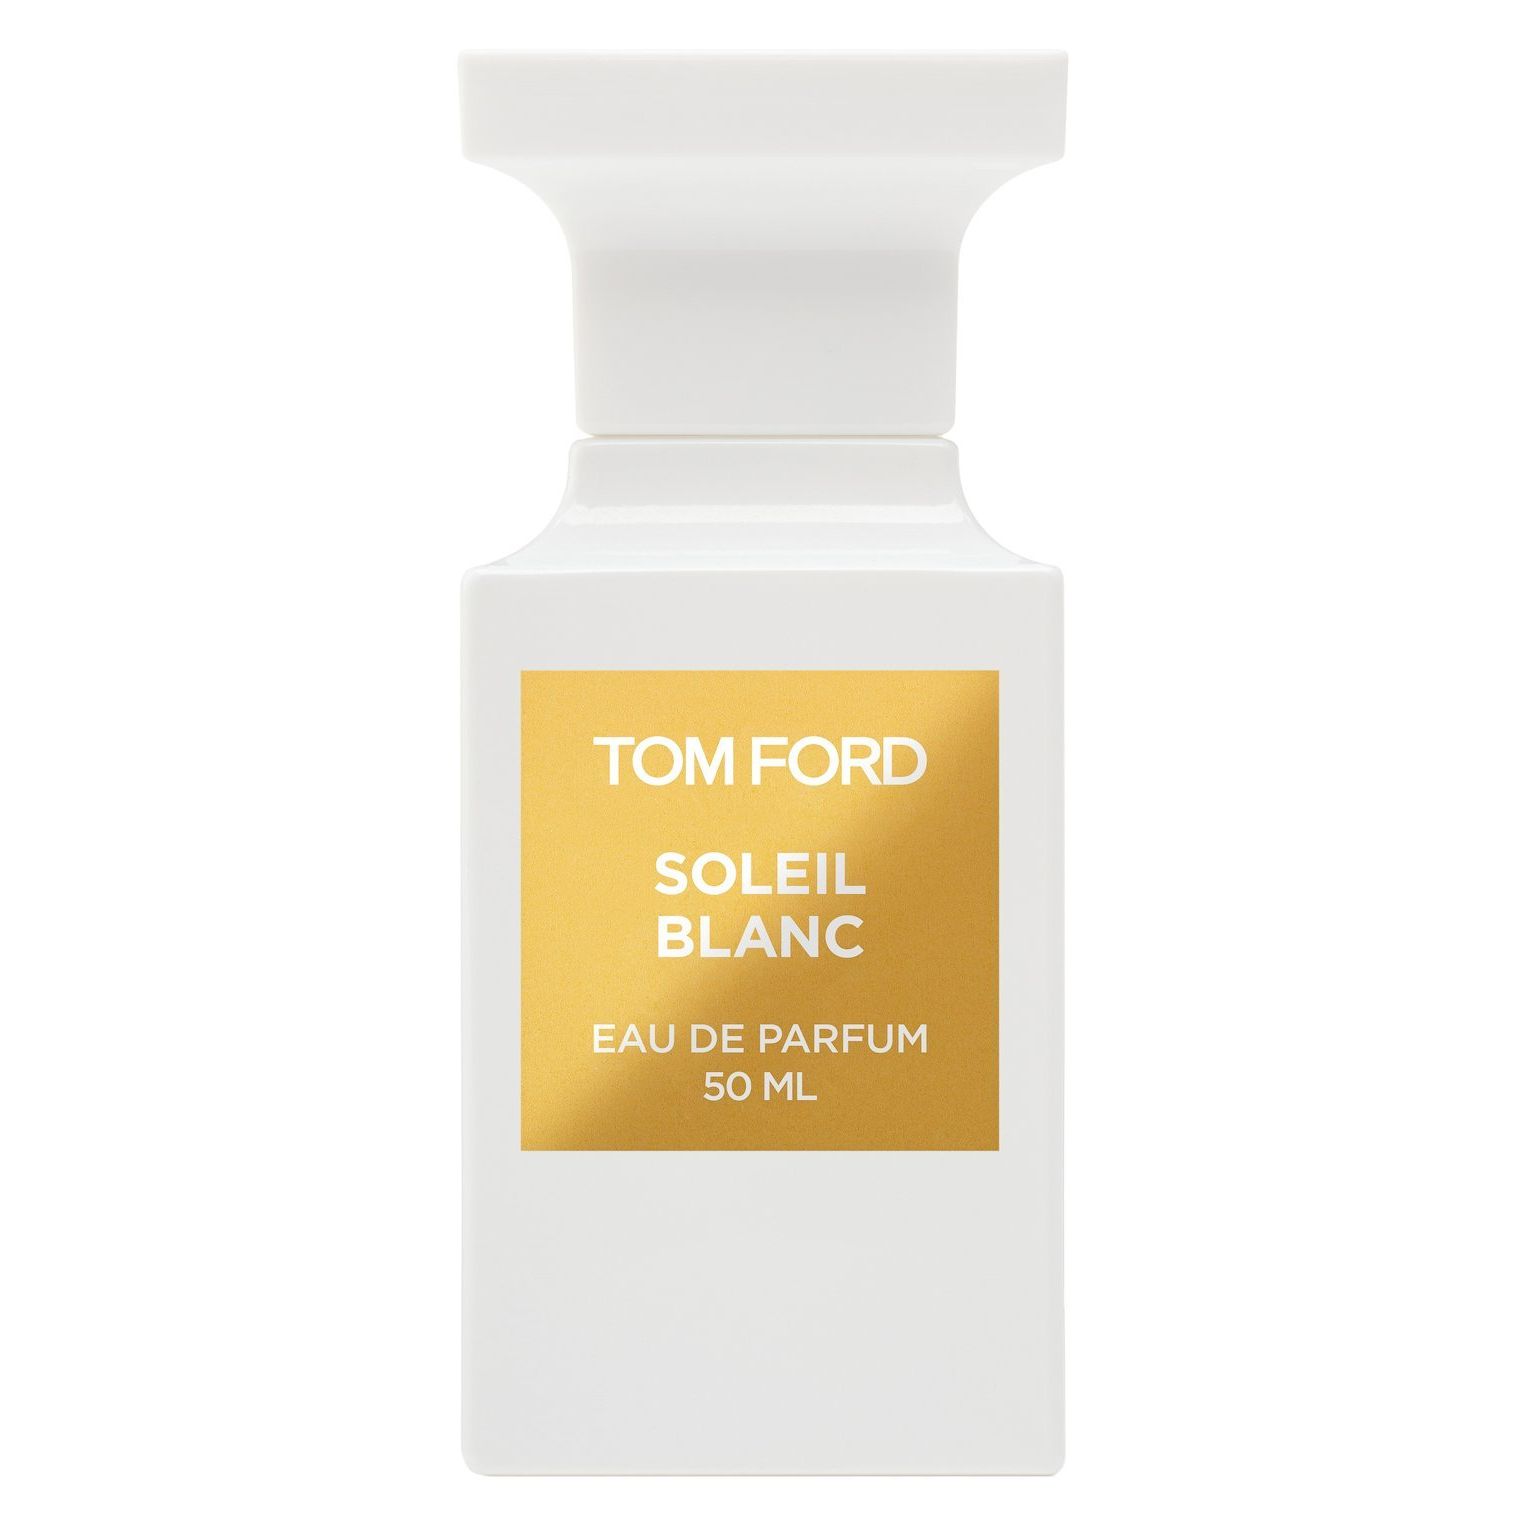 Вода парфюмерная Tom Ford Soleil Blanc, унисекс, 50 мл soleil blanc